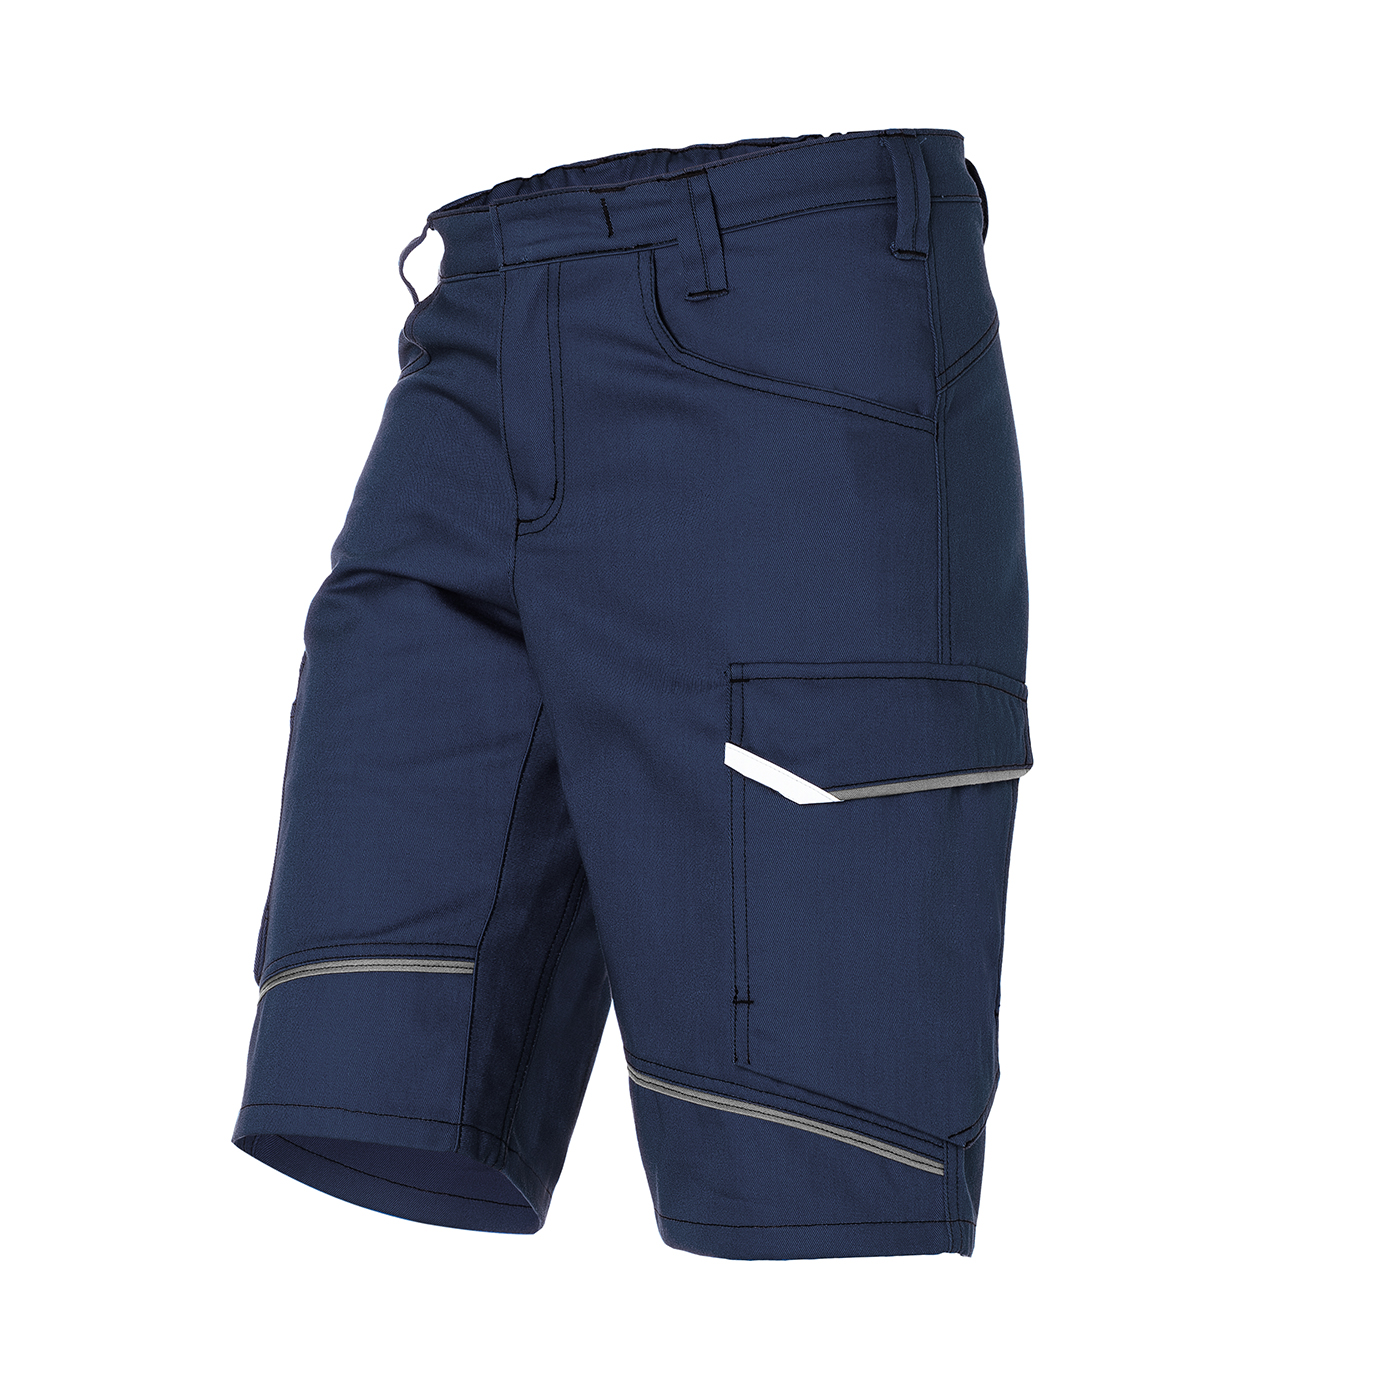 KÜBLER ICONIQ Shorts